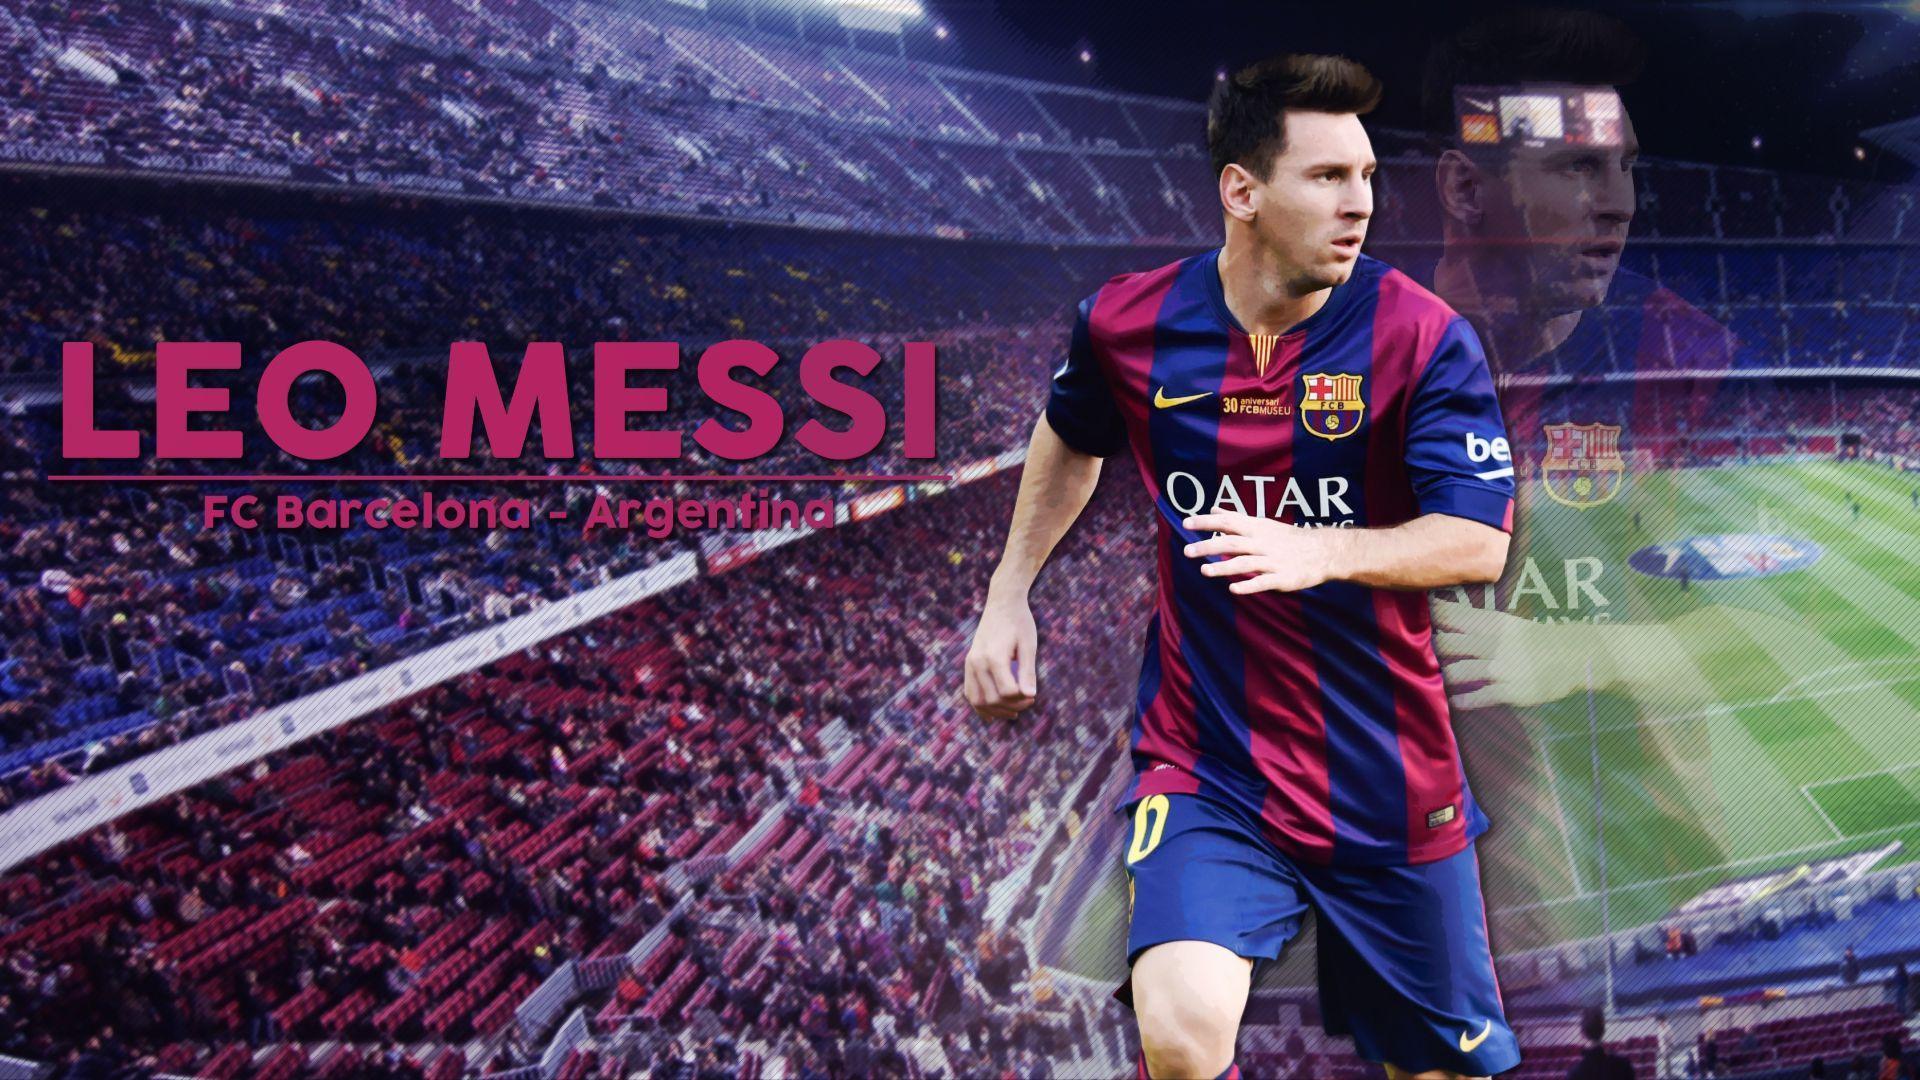 Lionel Messi HD Wallpaper 2016 Wallpaper Pop